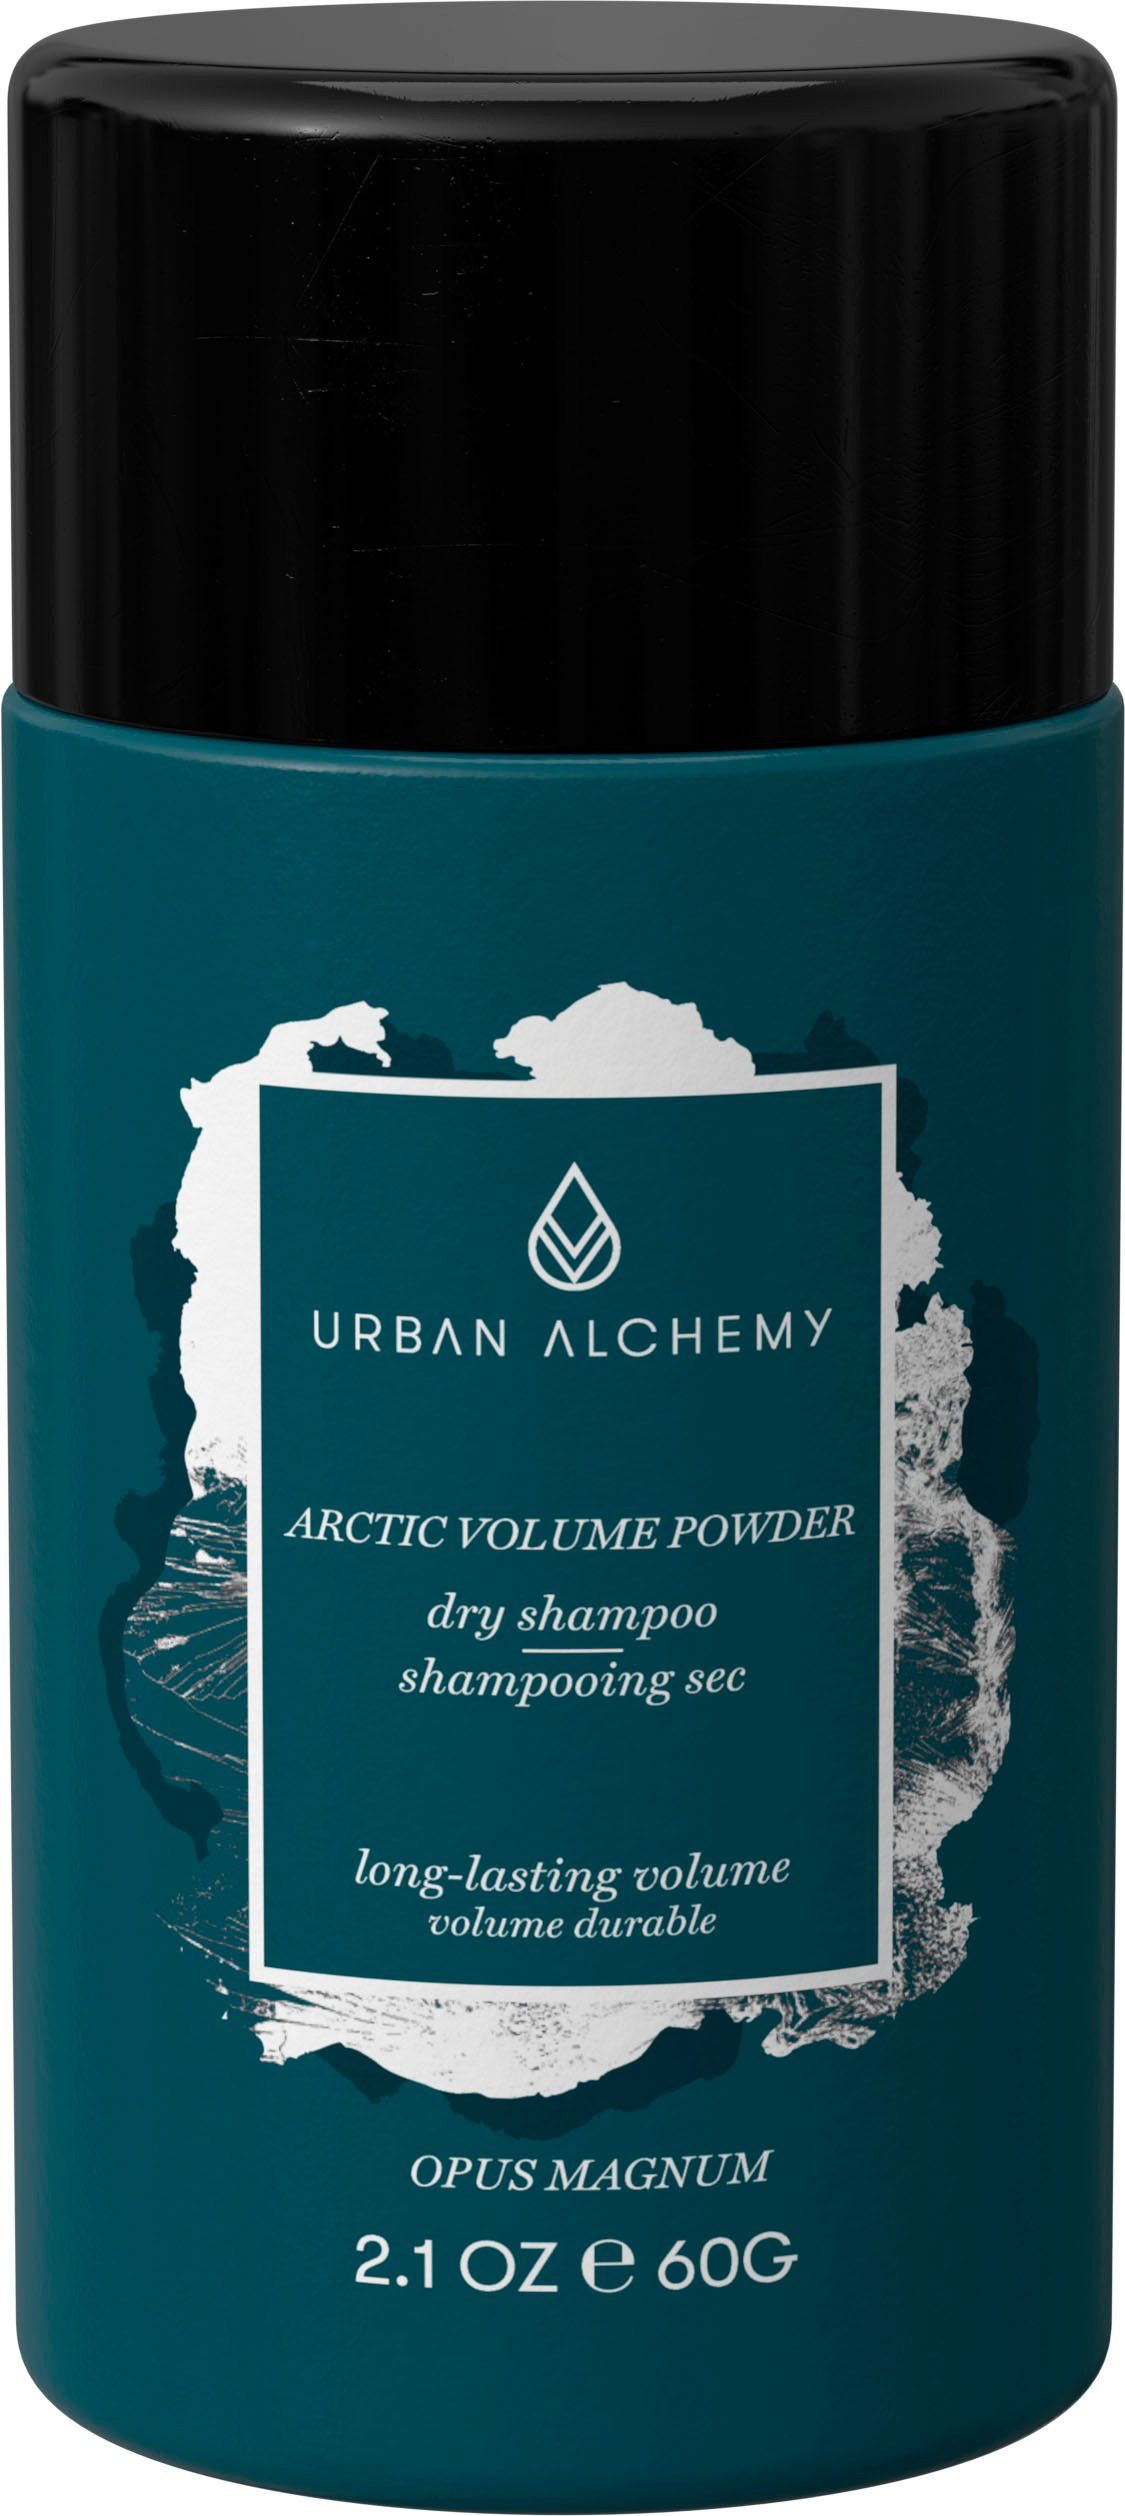 URBAN ALCHEMY Volumenpuder Arctic Volume Powder